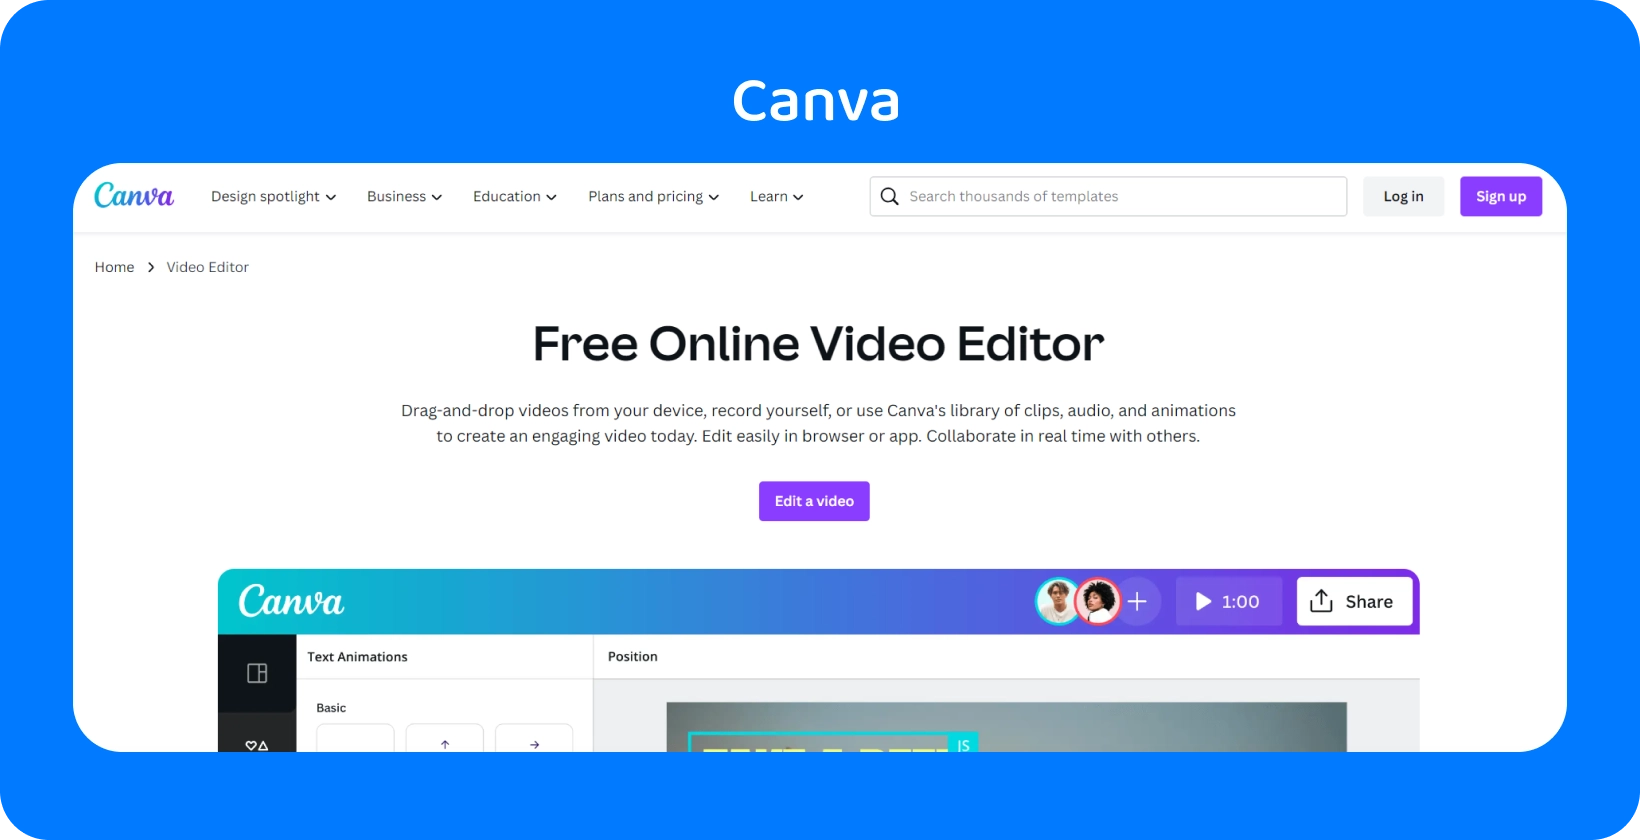 Užívateľsky prívetivé rozhranie Canva zobrazené s rôznymi možnosťami dizajnu pre sociálne médiá, prezentácie, videá a ďalšie.